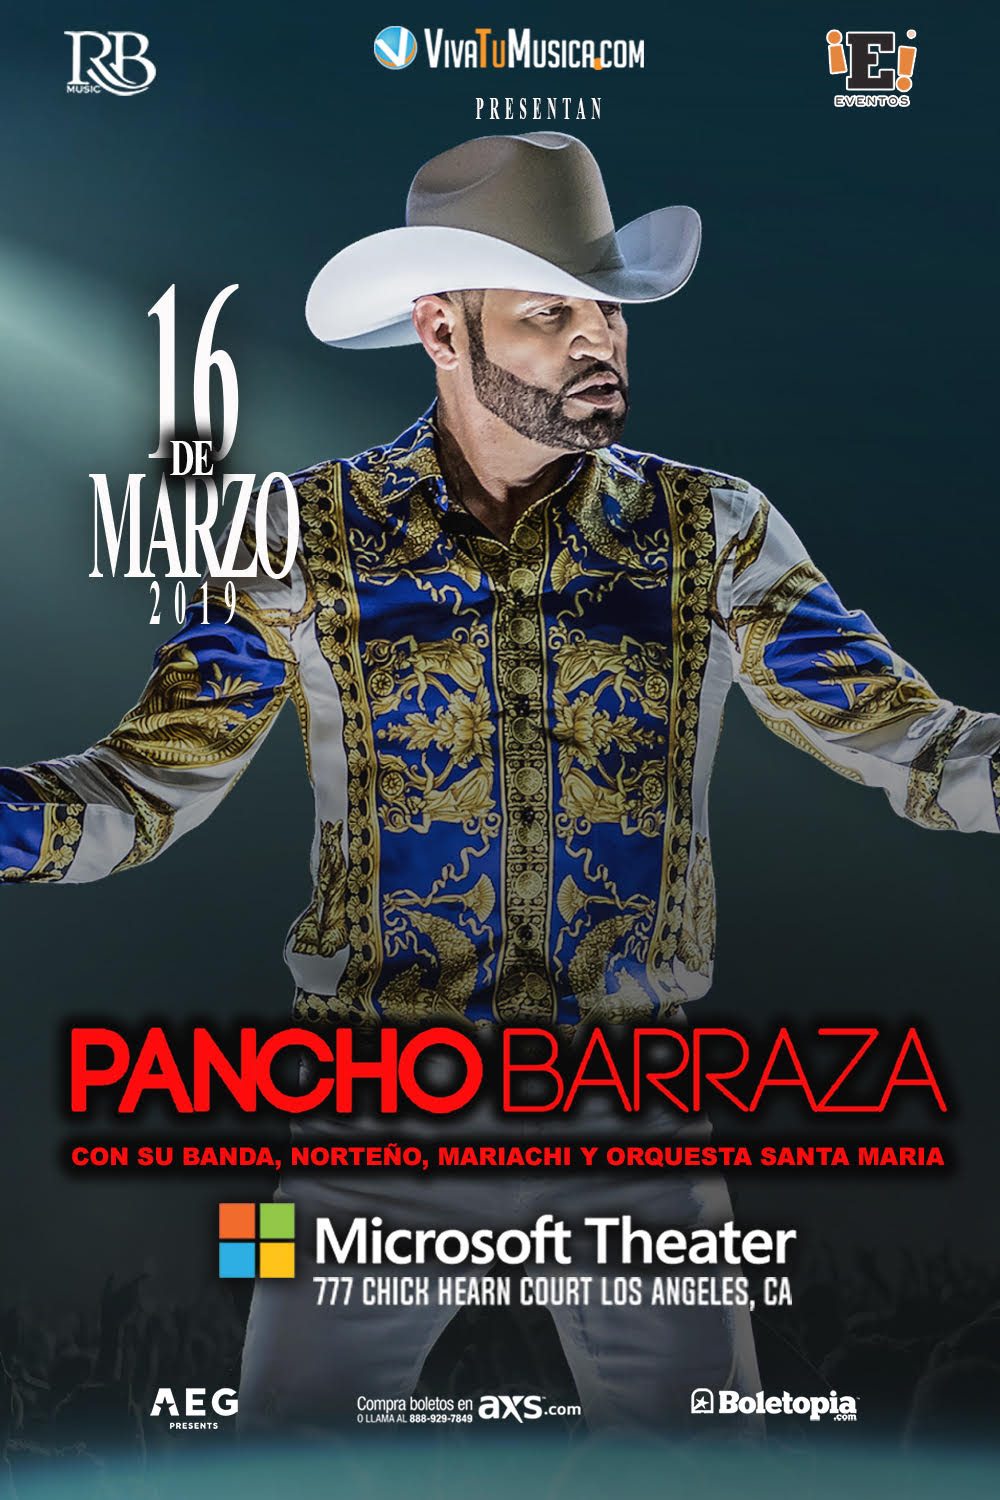 Pancho Barraza Regresa Una Vez Más a Los Angeles! The Live!